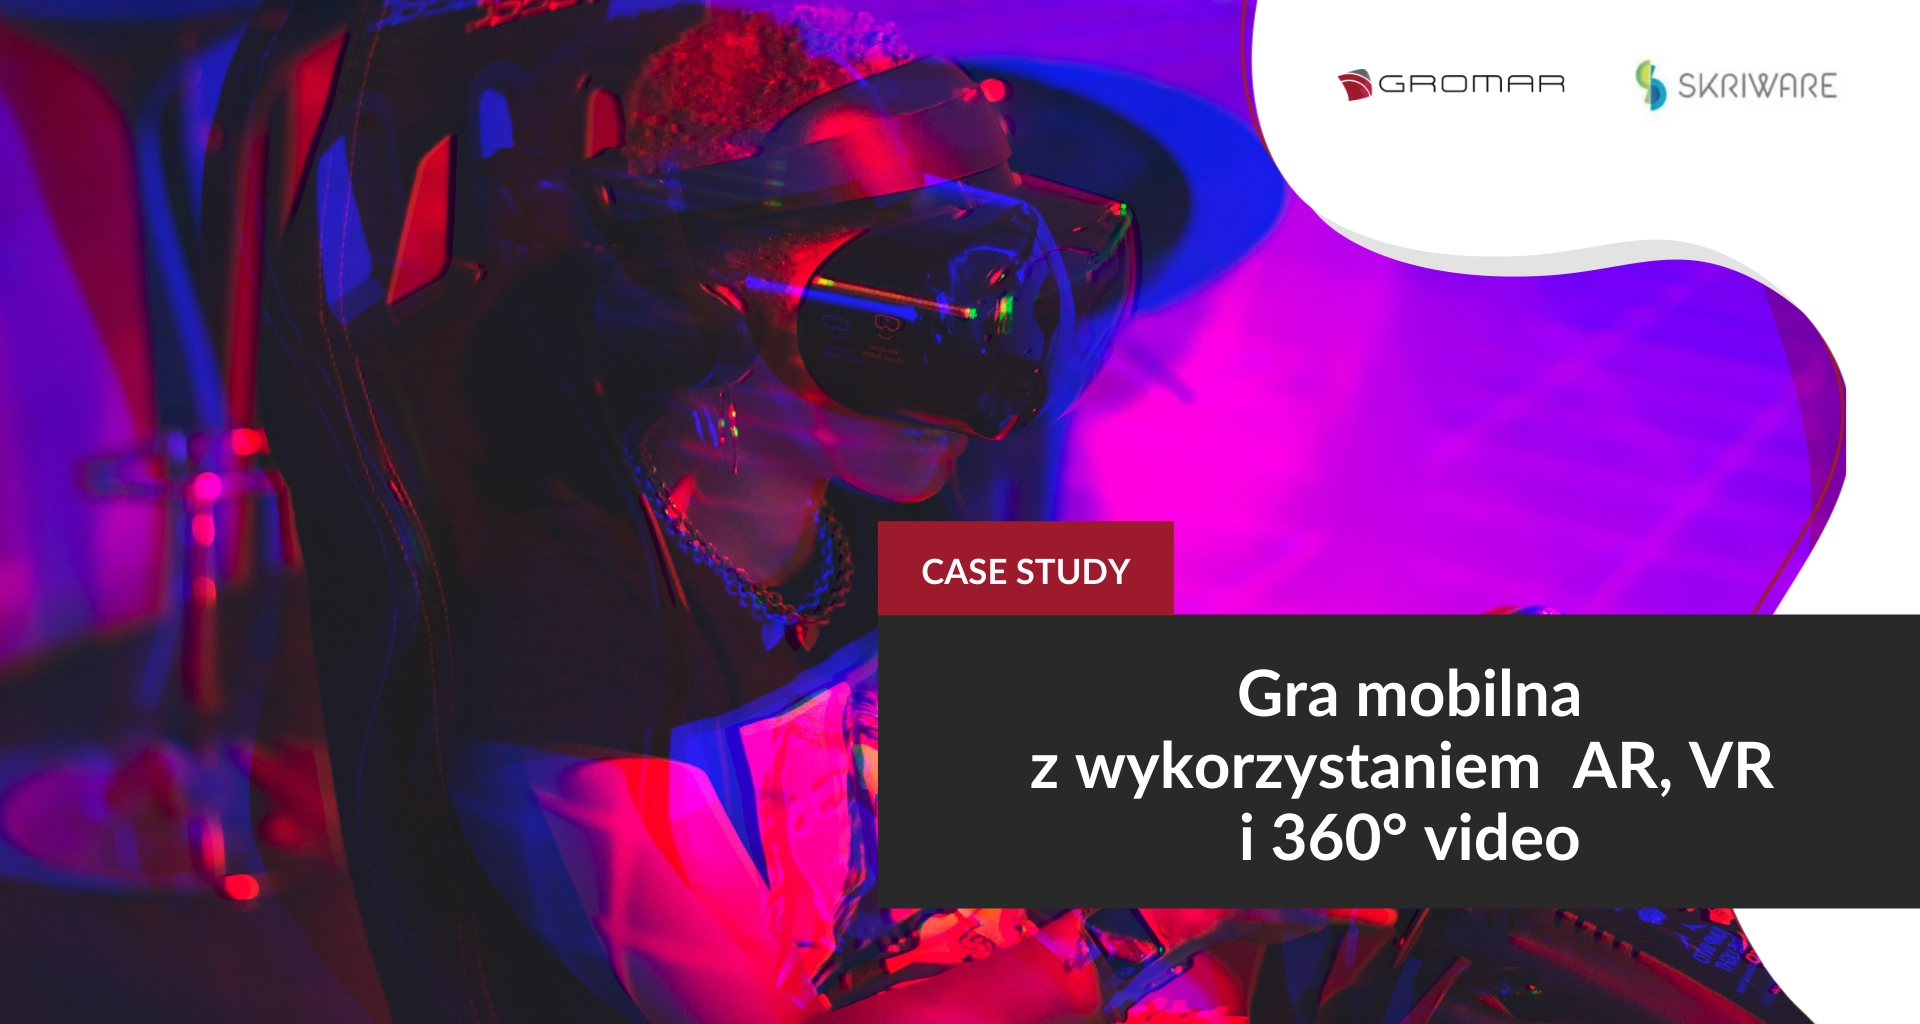 Gra mobilna z wykorzystaniem AR, VR i 360° video. Case study Skriware.